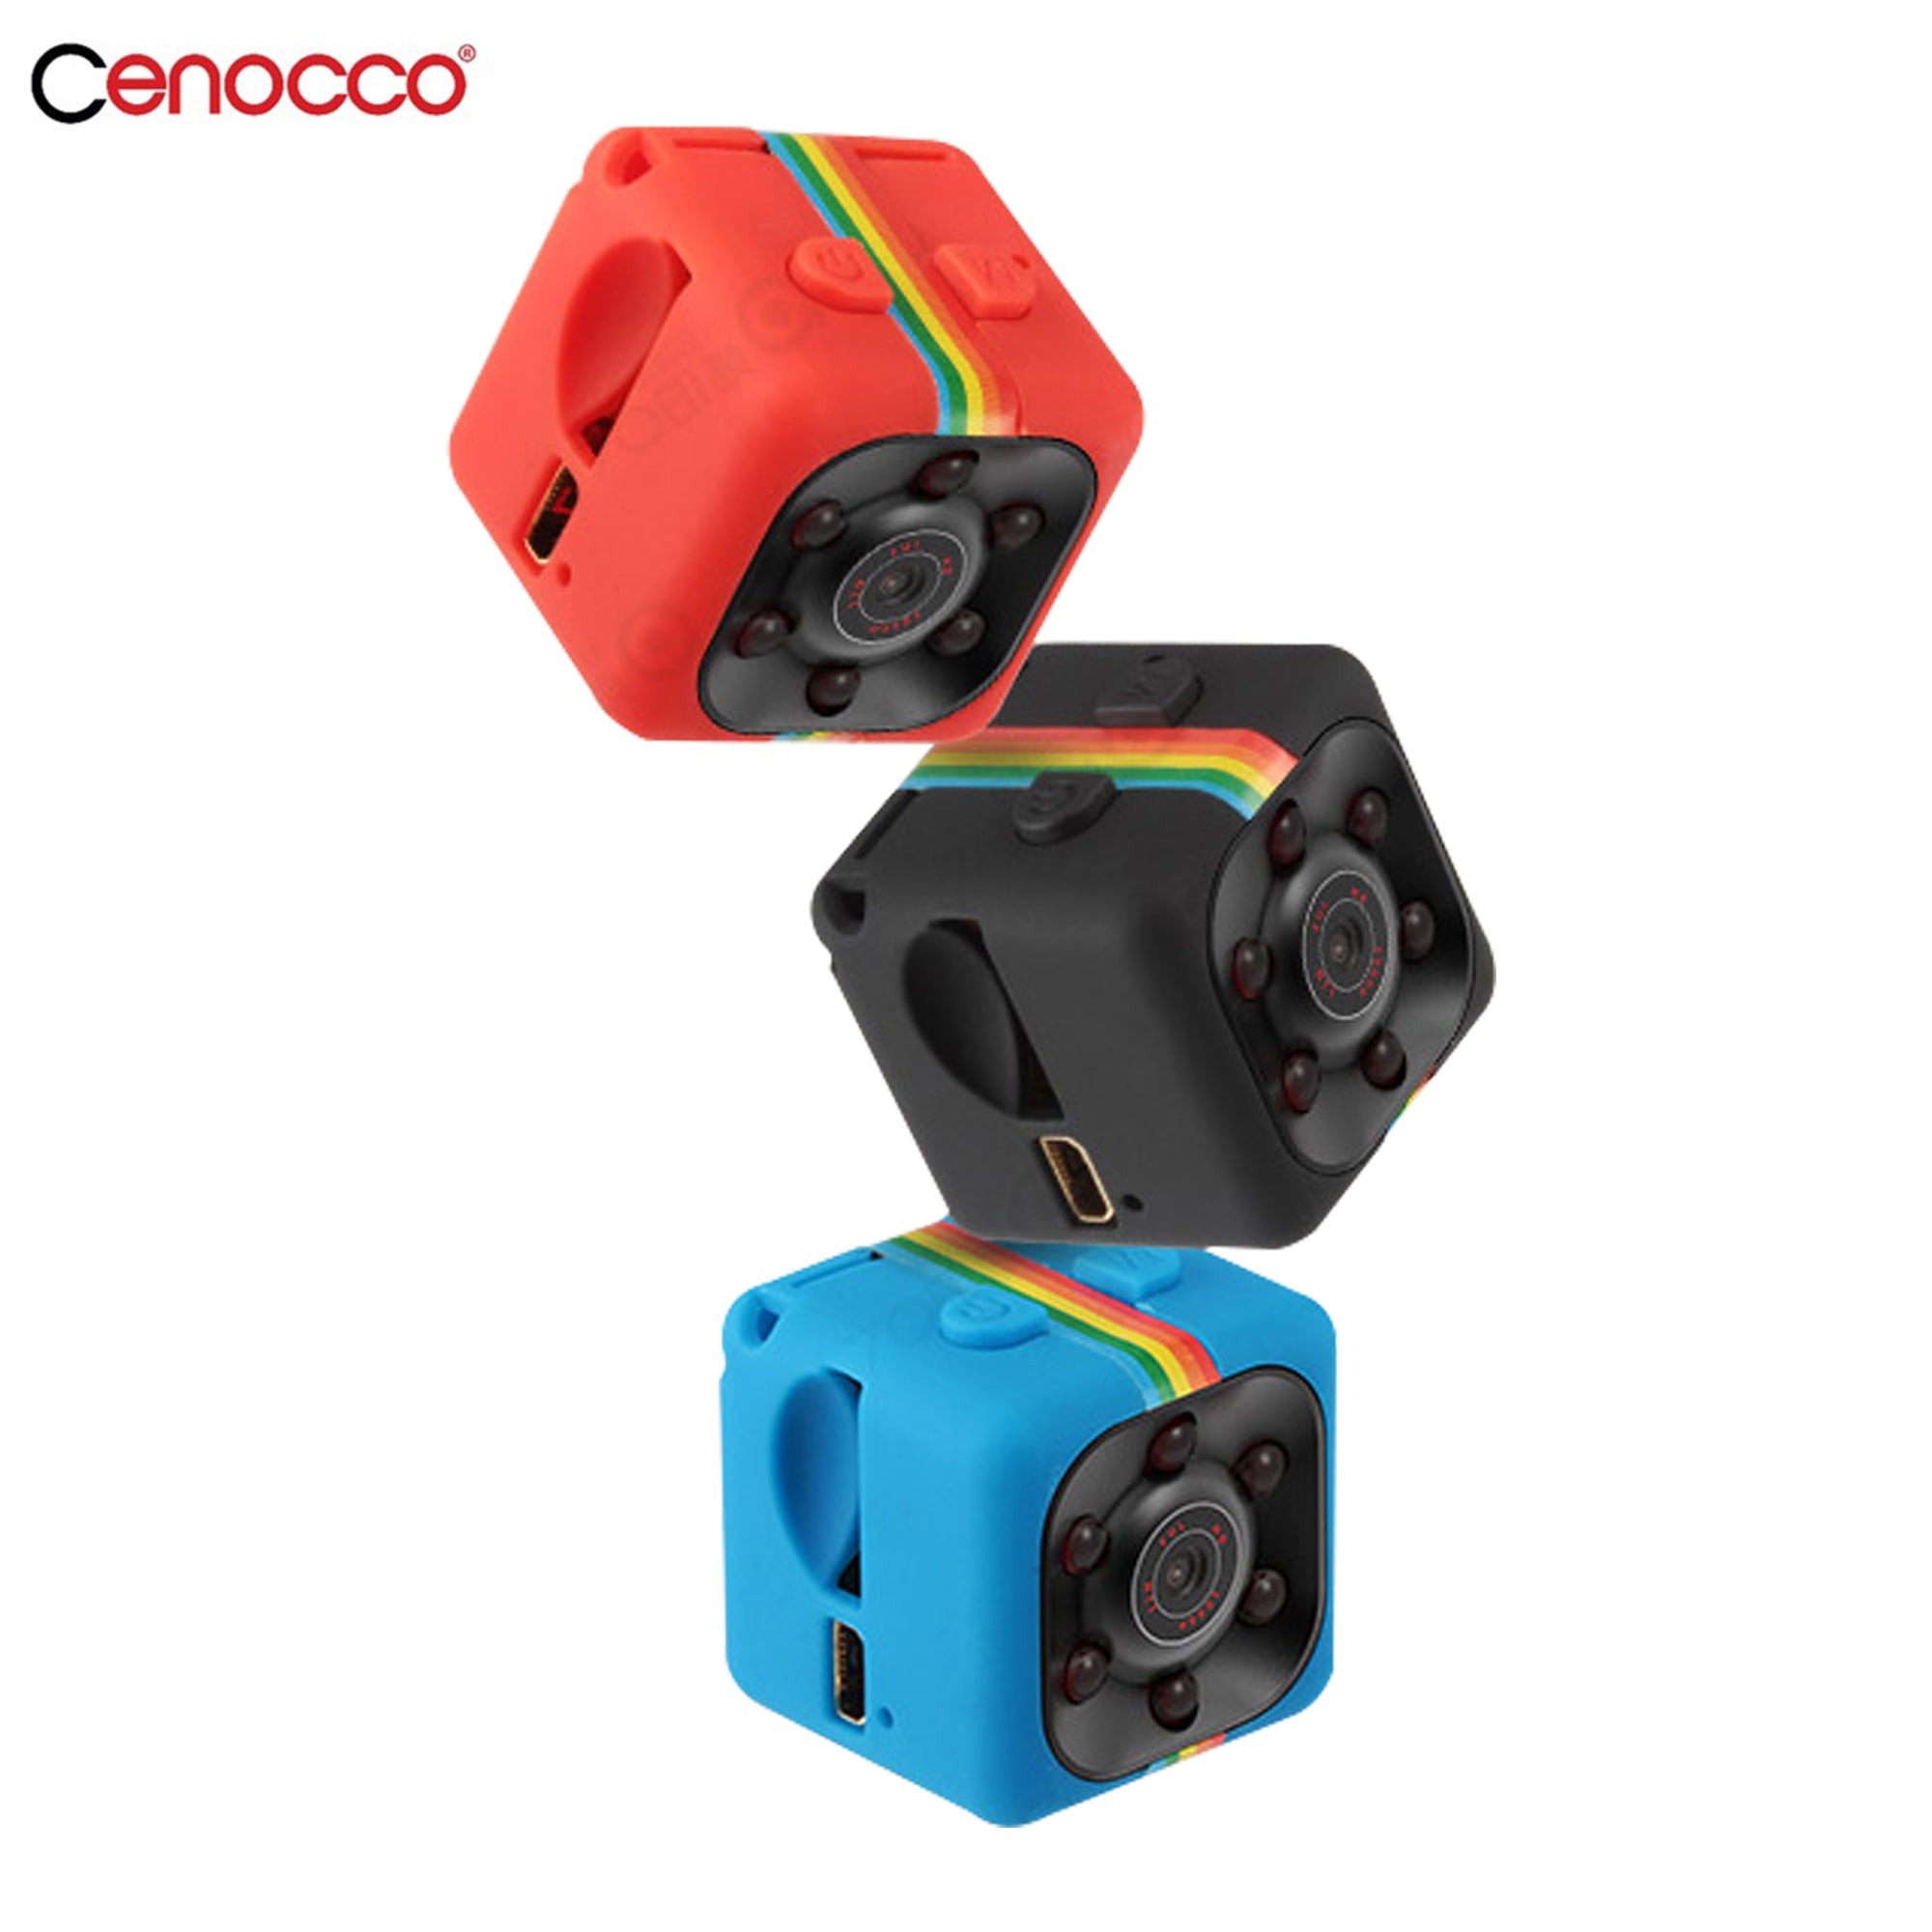 Cenocco-CC-9047-Mini-camera-HD1080P-CC-9047-2_8724dc5e-4a7b-4bd4-adb7-fdca27f52fde.jpg